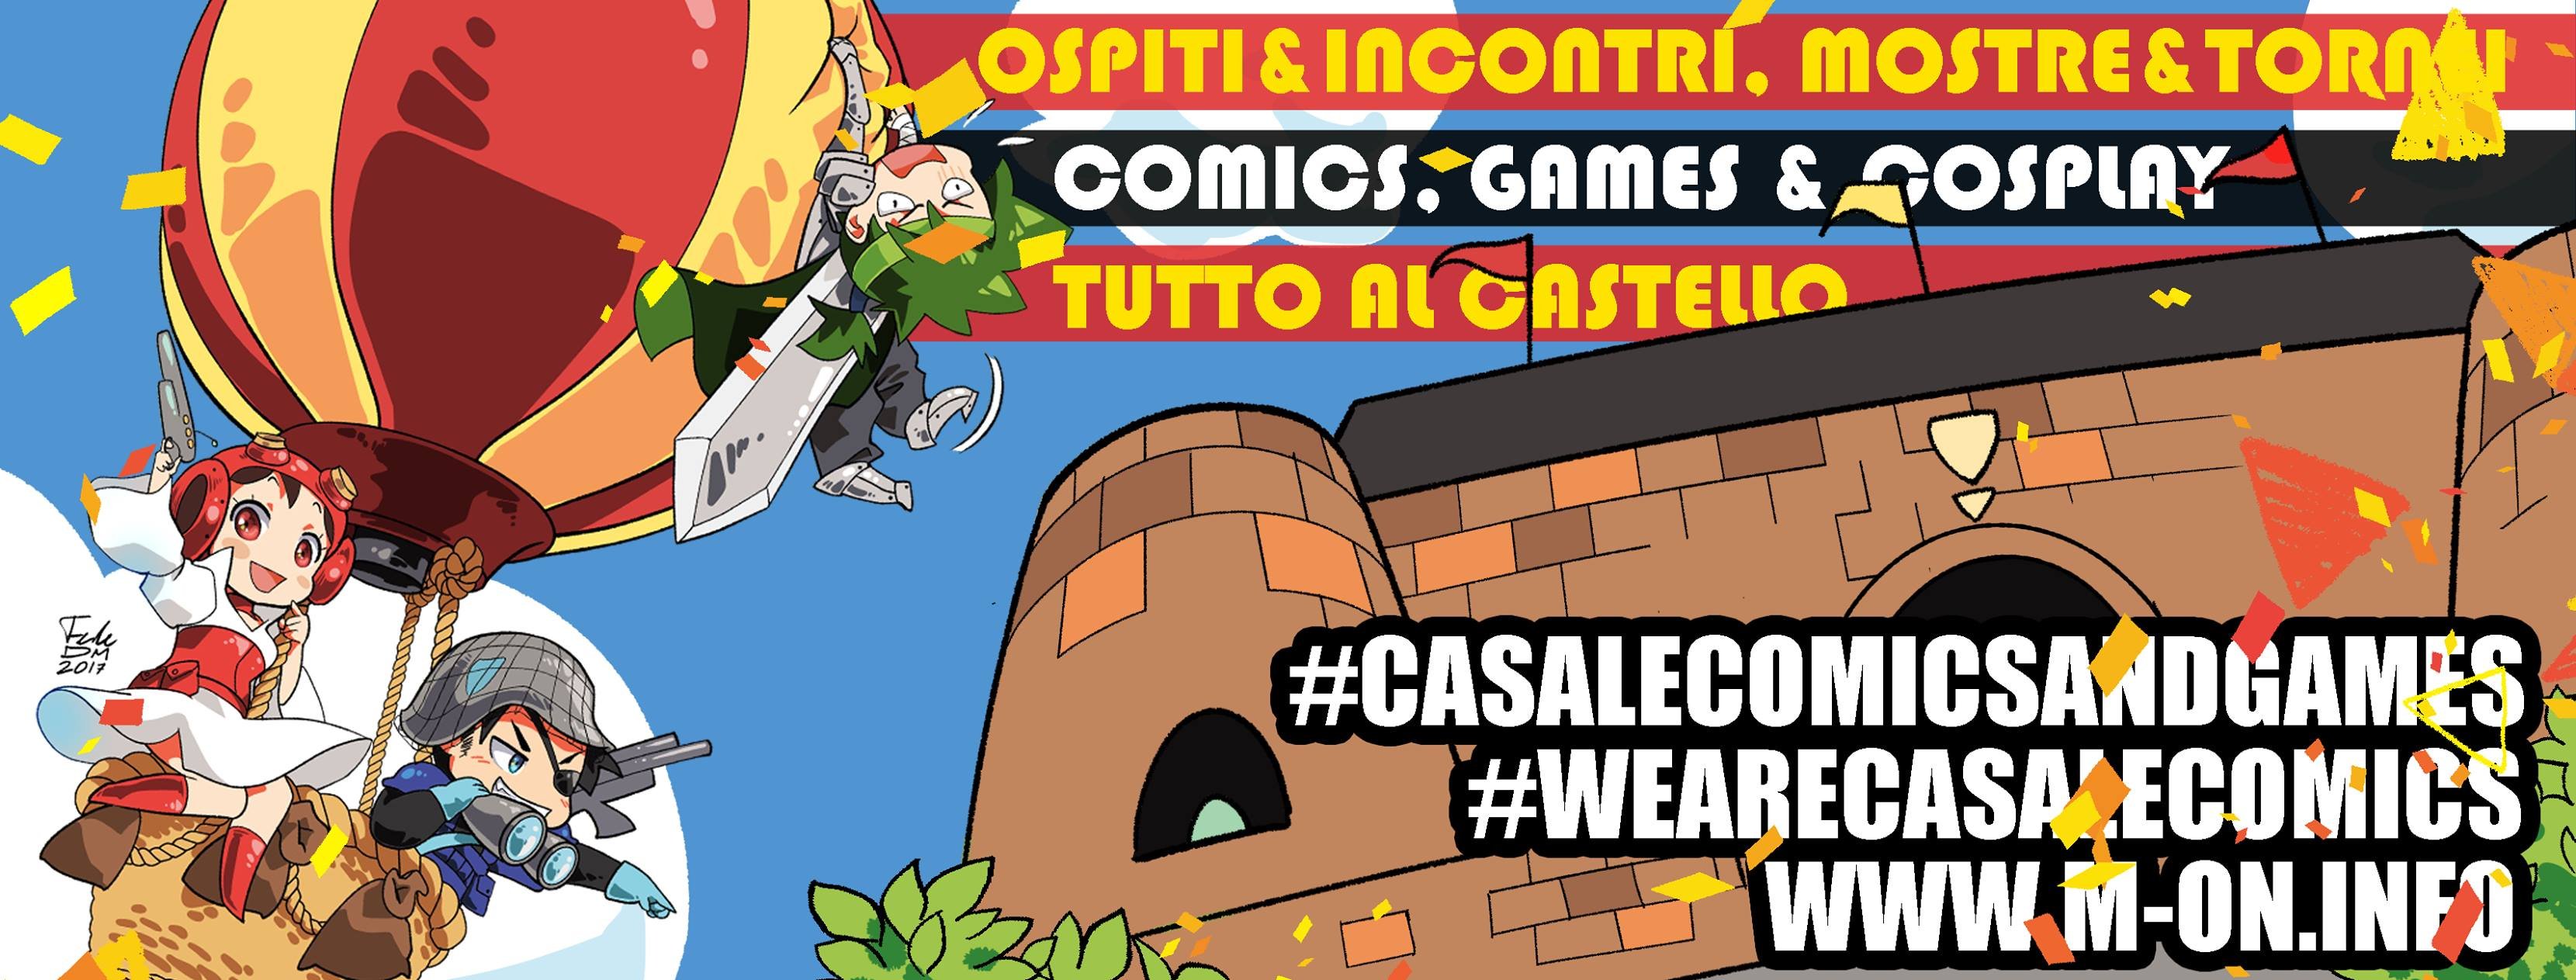 Casale Comics & Games: un castello pieno di fantasia